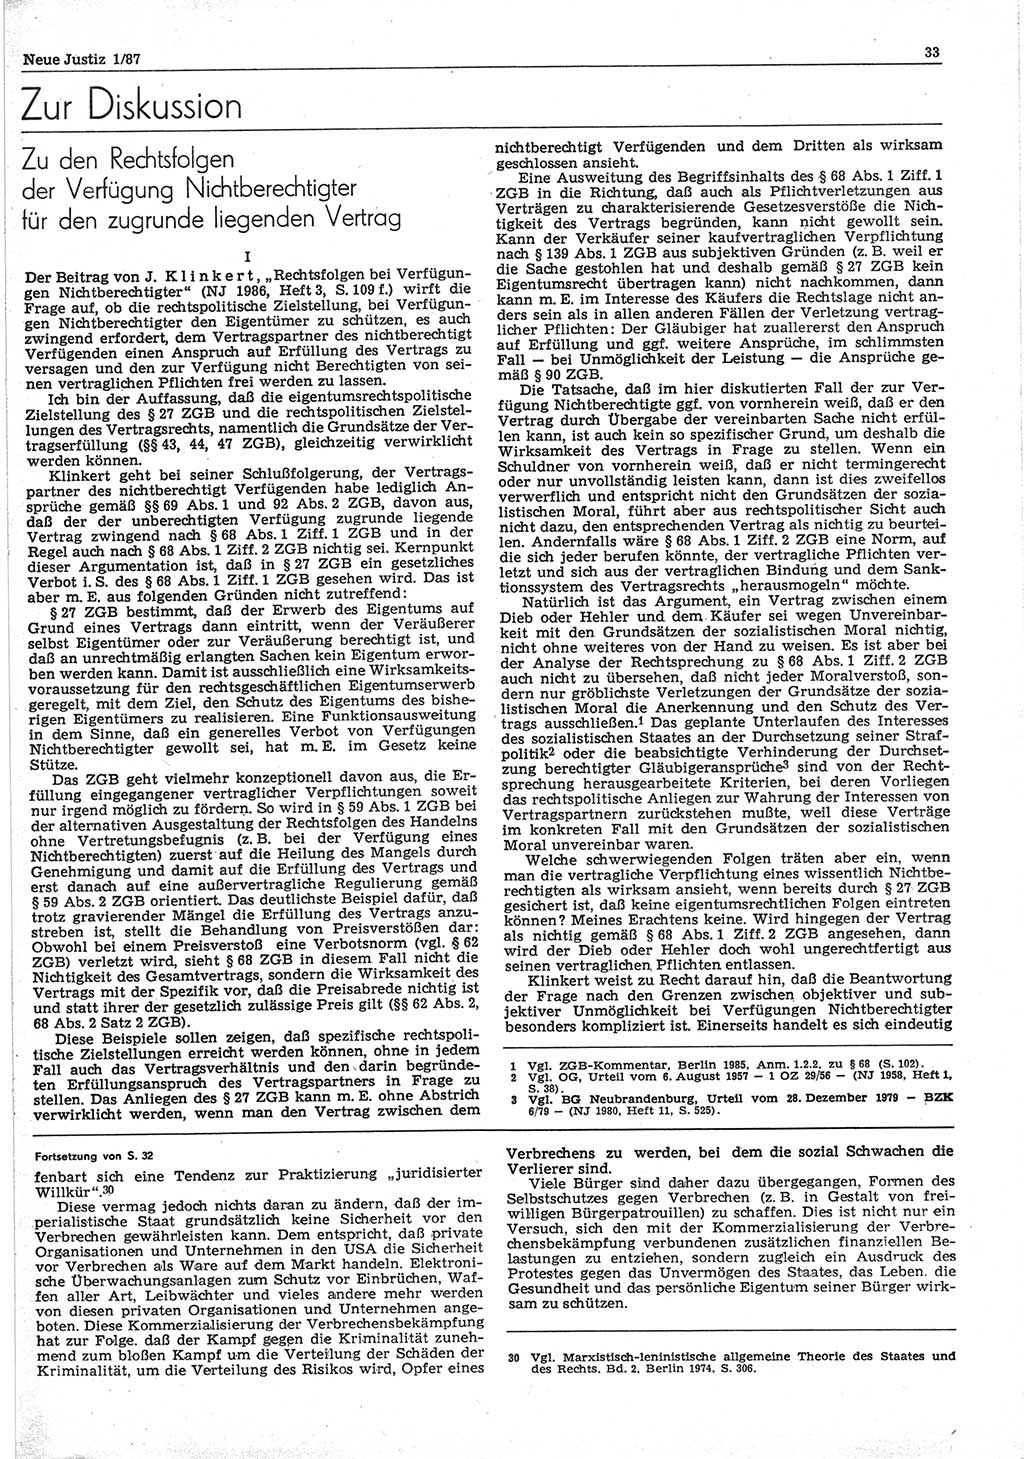 Neue Justiz (NJ), Zeitschrift für sozialistisches Recht und Gesetzlichkeit [Deutsche Demokratische Republik (DDR)], 41. Jahrgang 1987, Seite 33 (NJ DDR 1987, S. 33)